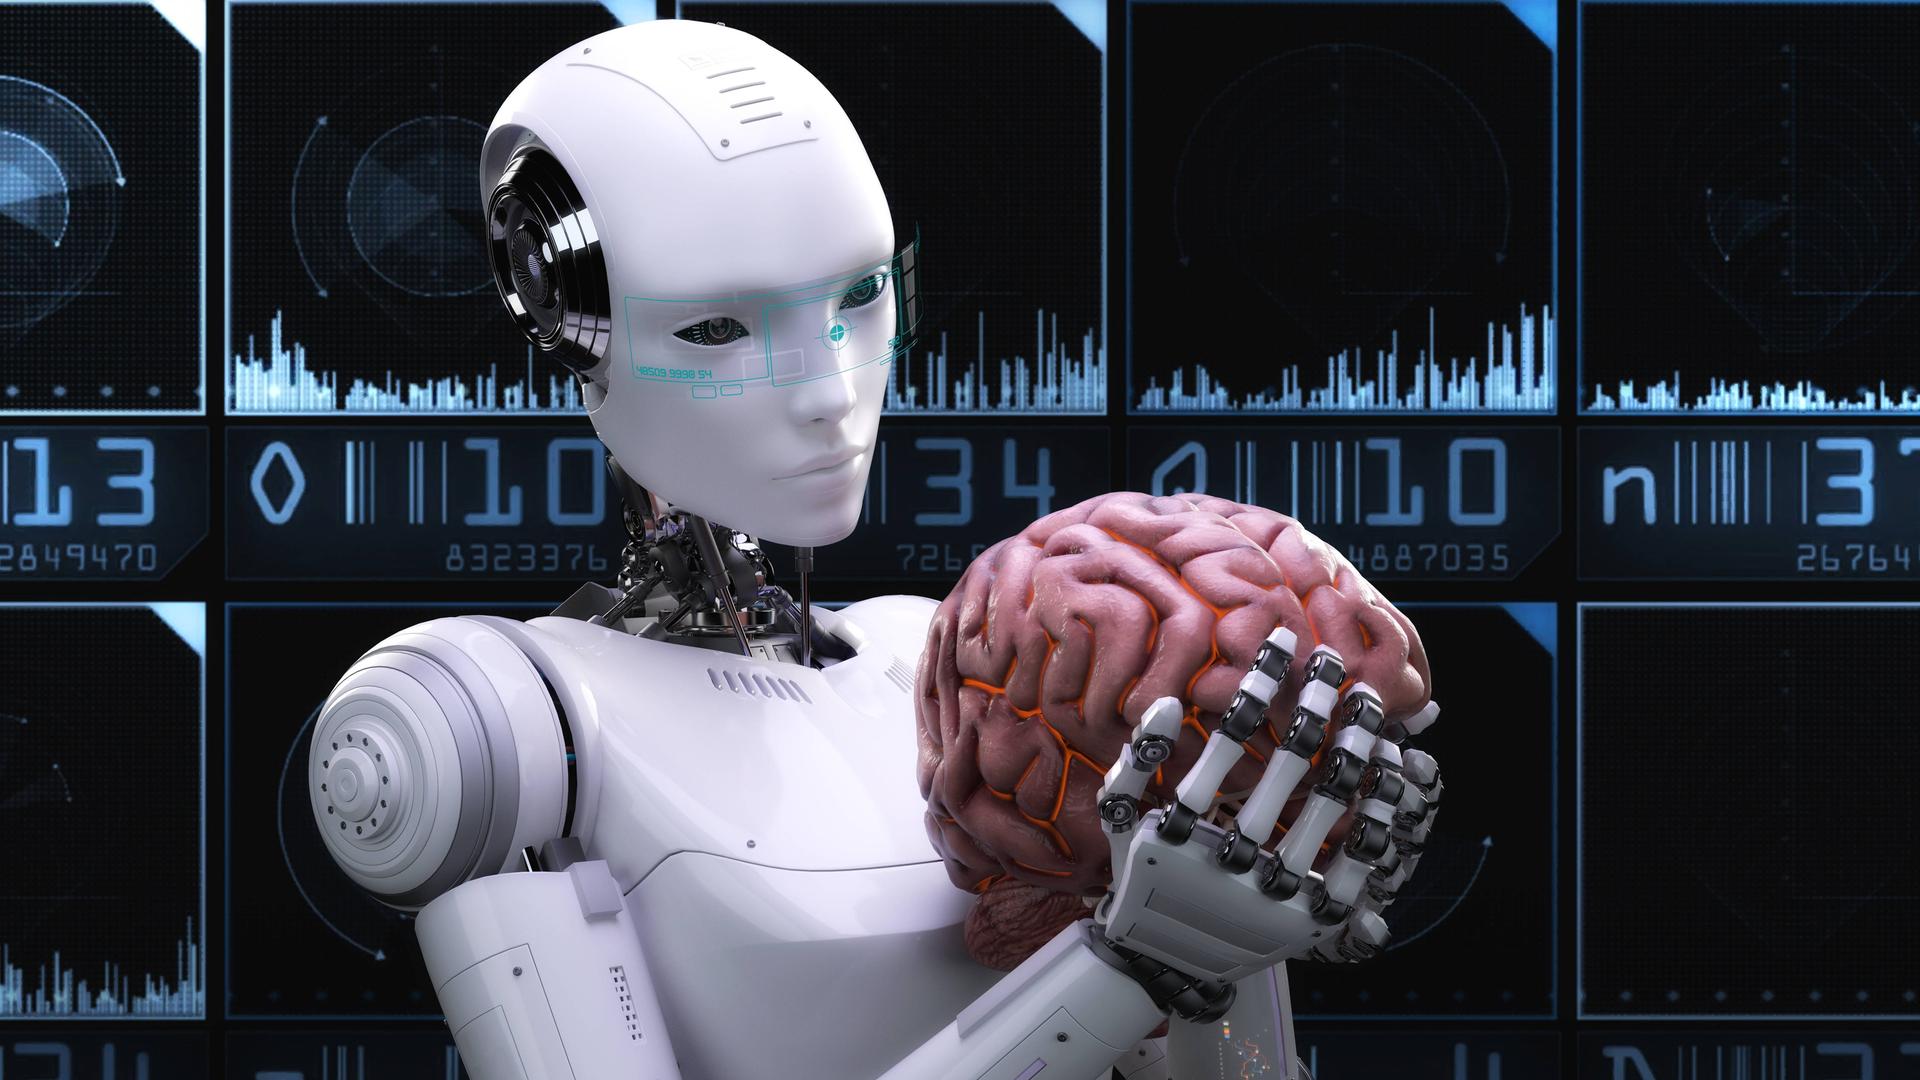 Künstlerische 3D-Illustration eines Cyborgs mit künstlicher Intelligenz.